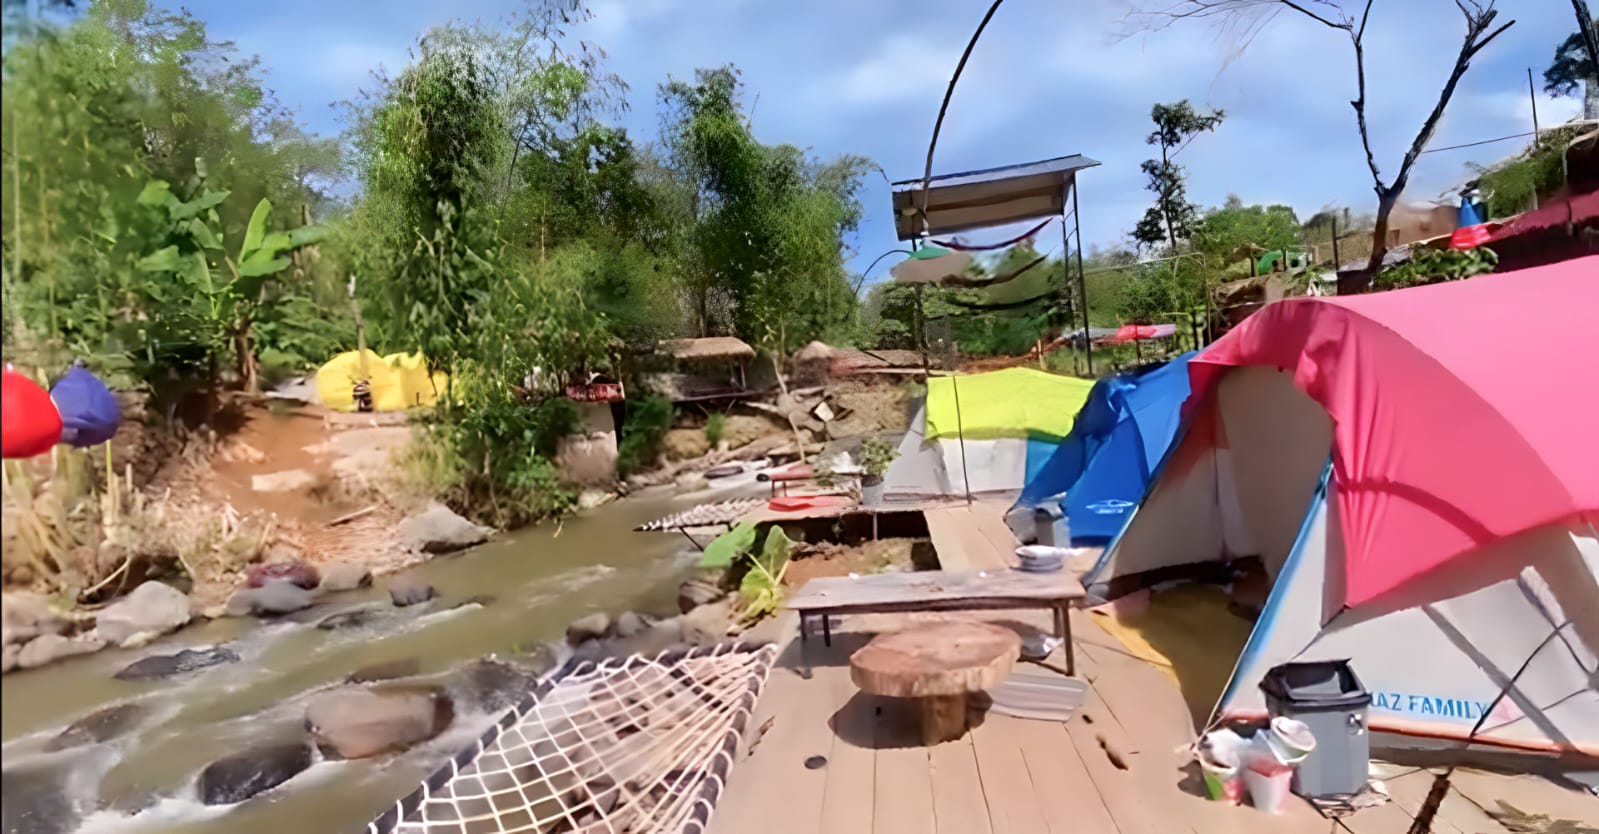 Riverside Dusun Camp Outdoor Glamping Pagaralam, Ini Rekomendasi Camping di Pinggir Sungai Buat Kamu!